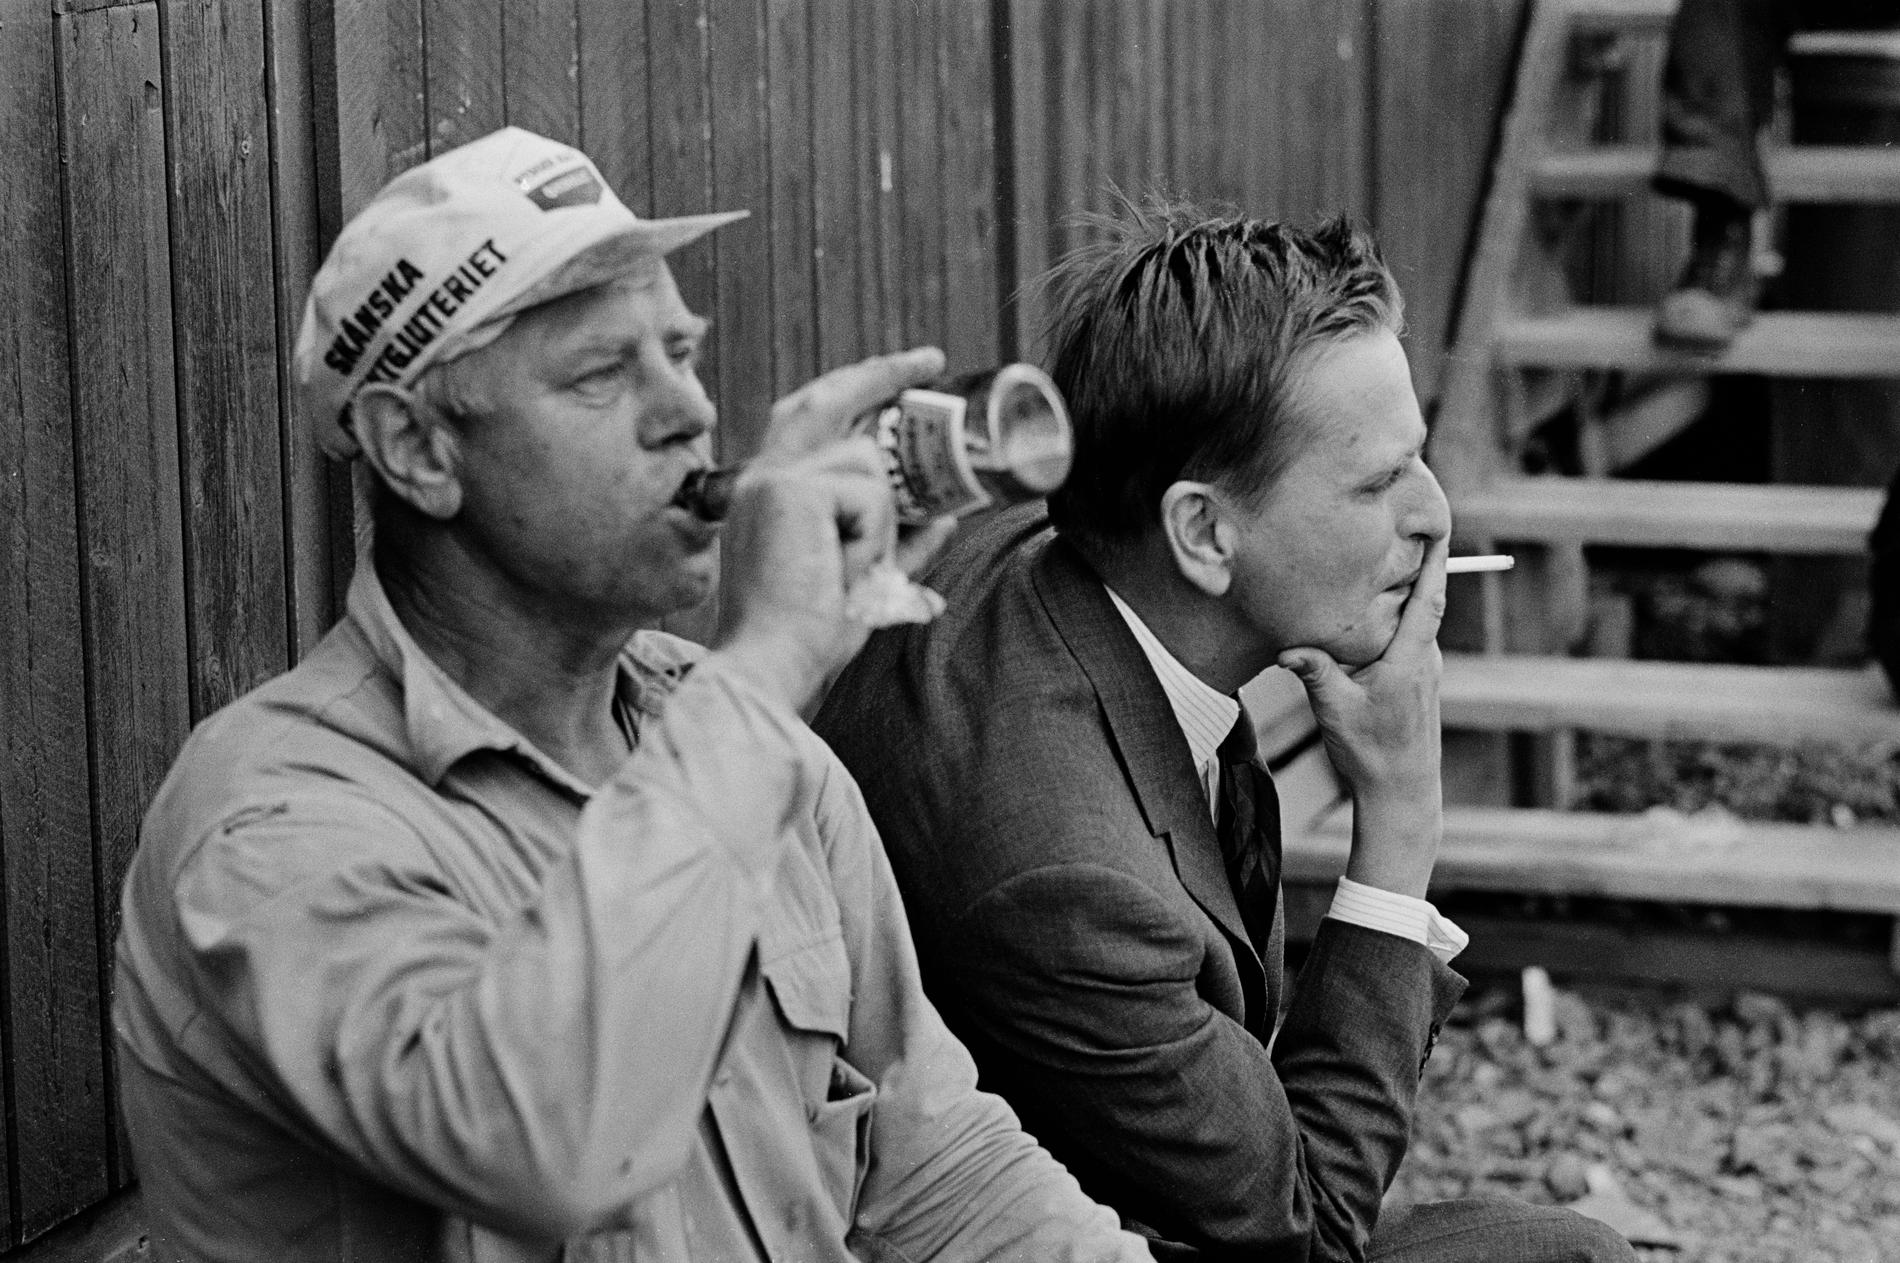 Fotografen Jean Hermanson följde den unge Olof Palme under besök på byggen i Stockholmstrakten 1968. ”Här finns några av de bästa bilderna på Palme som någonsin tagits”, skriver Dan Jönsson. ”De förtjänar att bli klassiska.”